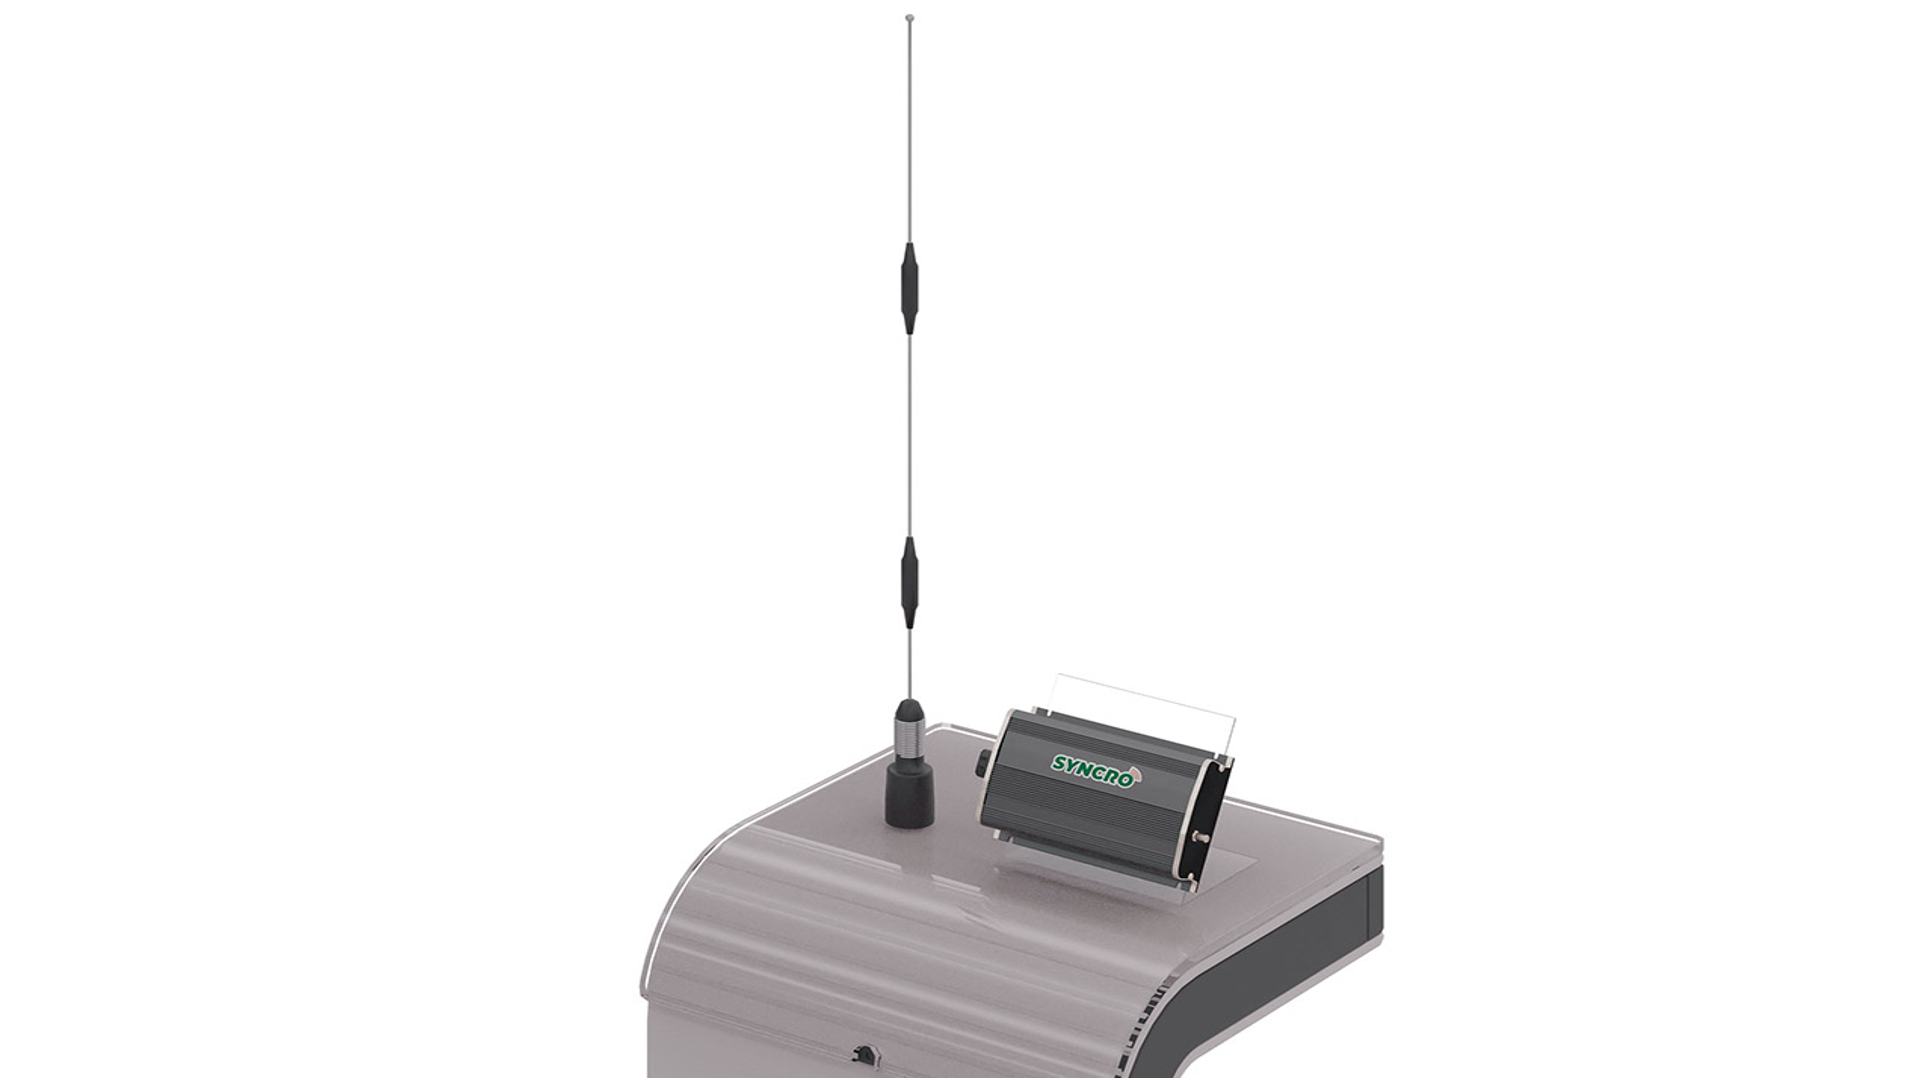 O kit do Syncro é formado por rádio Syncro, antena do rádio, cabo de alimentação e suportes de instalação